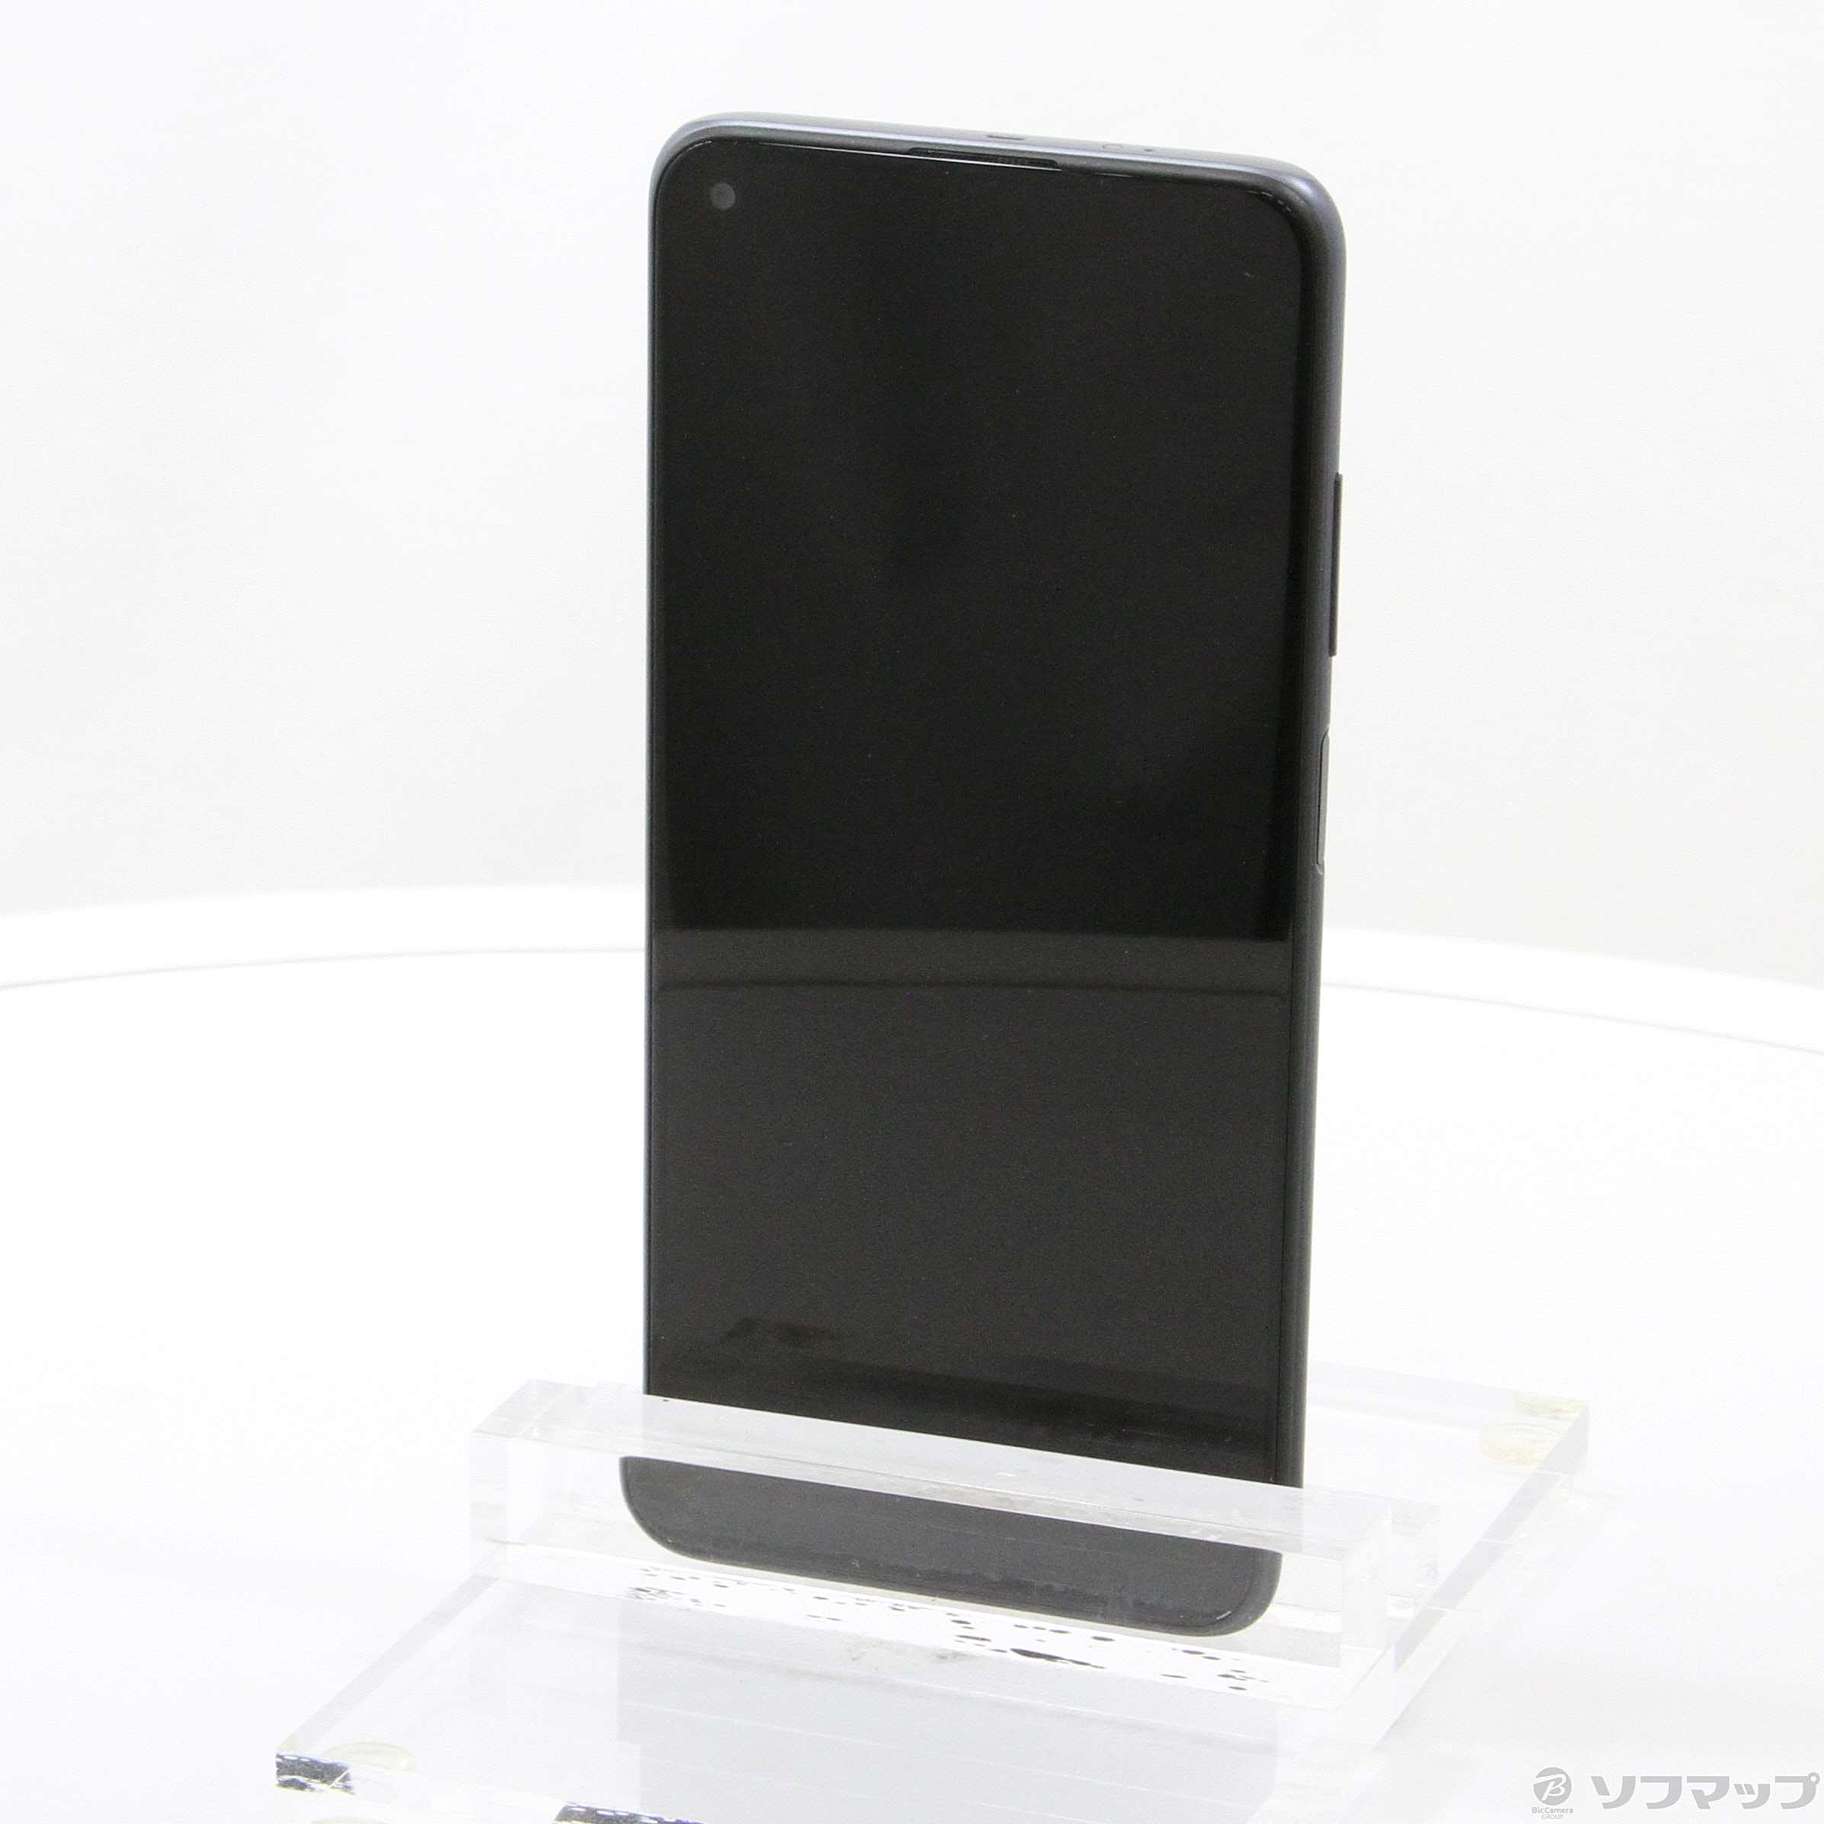 中古】Redmi Note 9T 64GB ナイトフォールブラック A001XM SoftBank ...